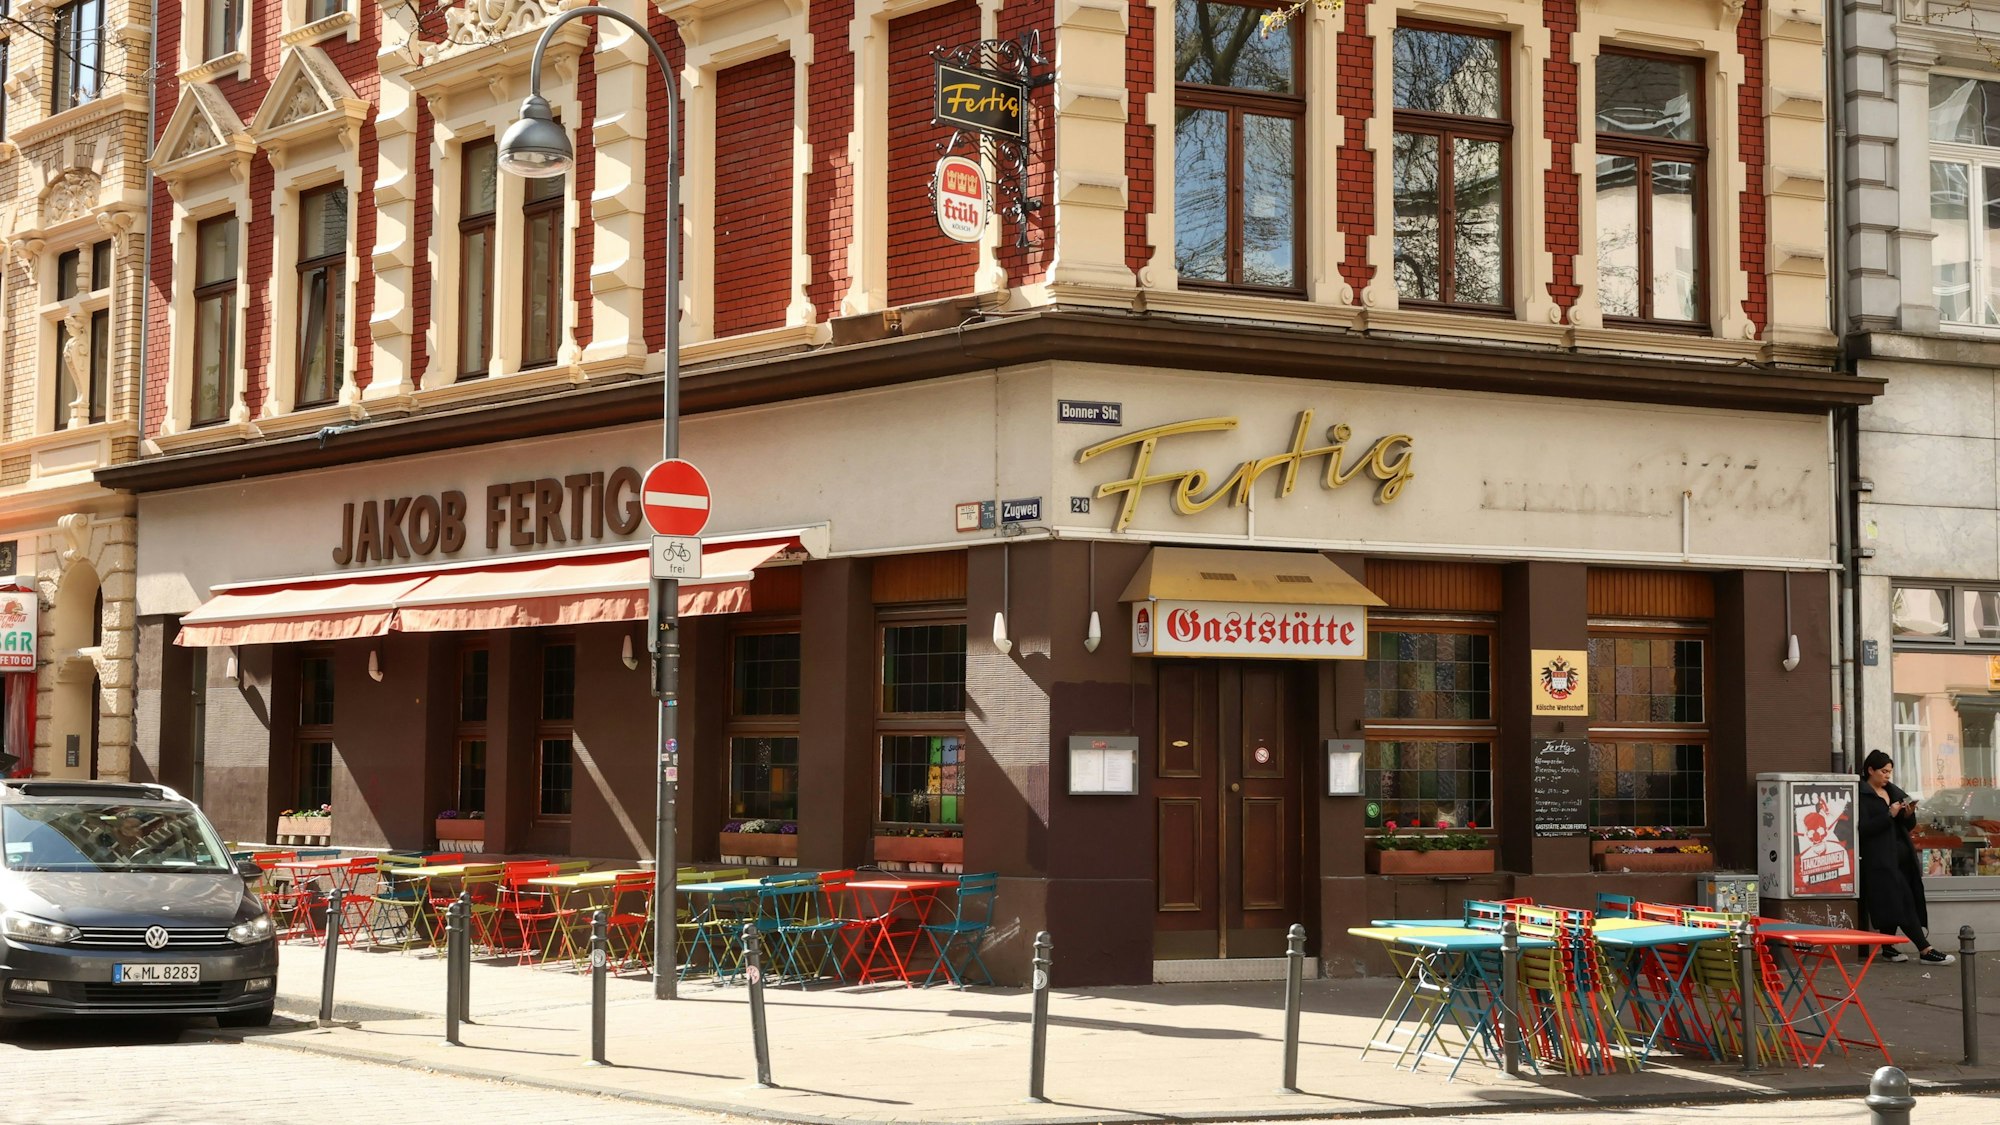 Die Gaststätte Fertig an der Bonner Straße in Köln von außen. Draußen stehen bunte Tische.